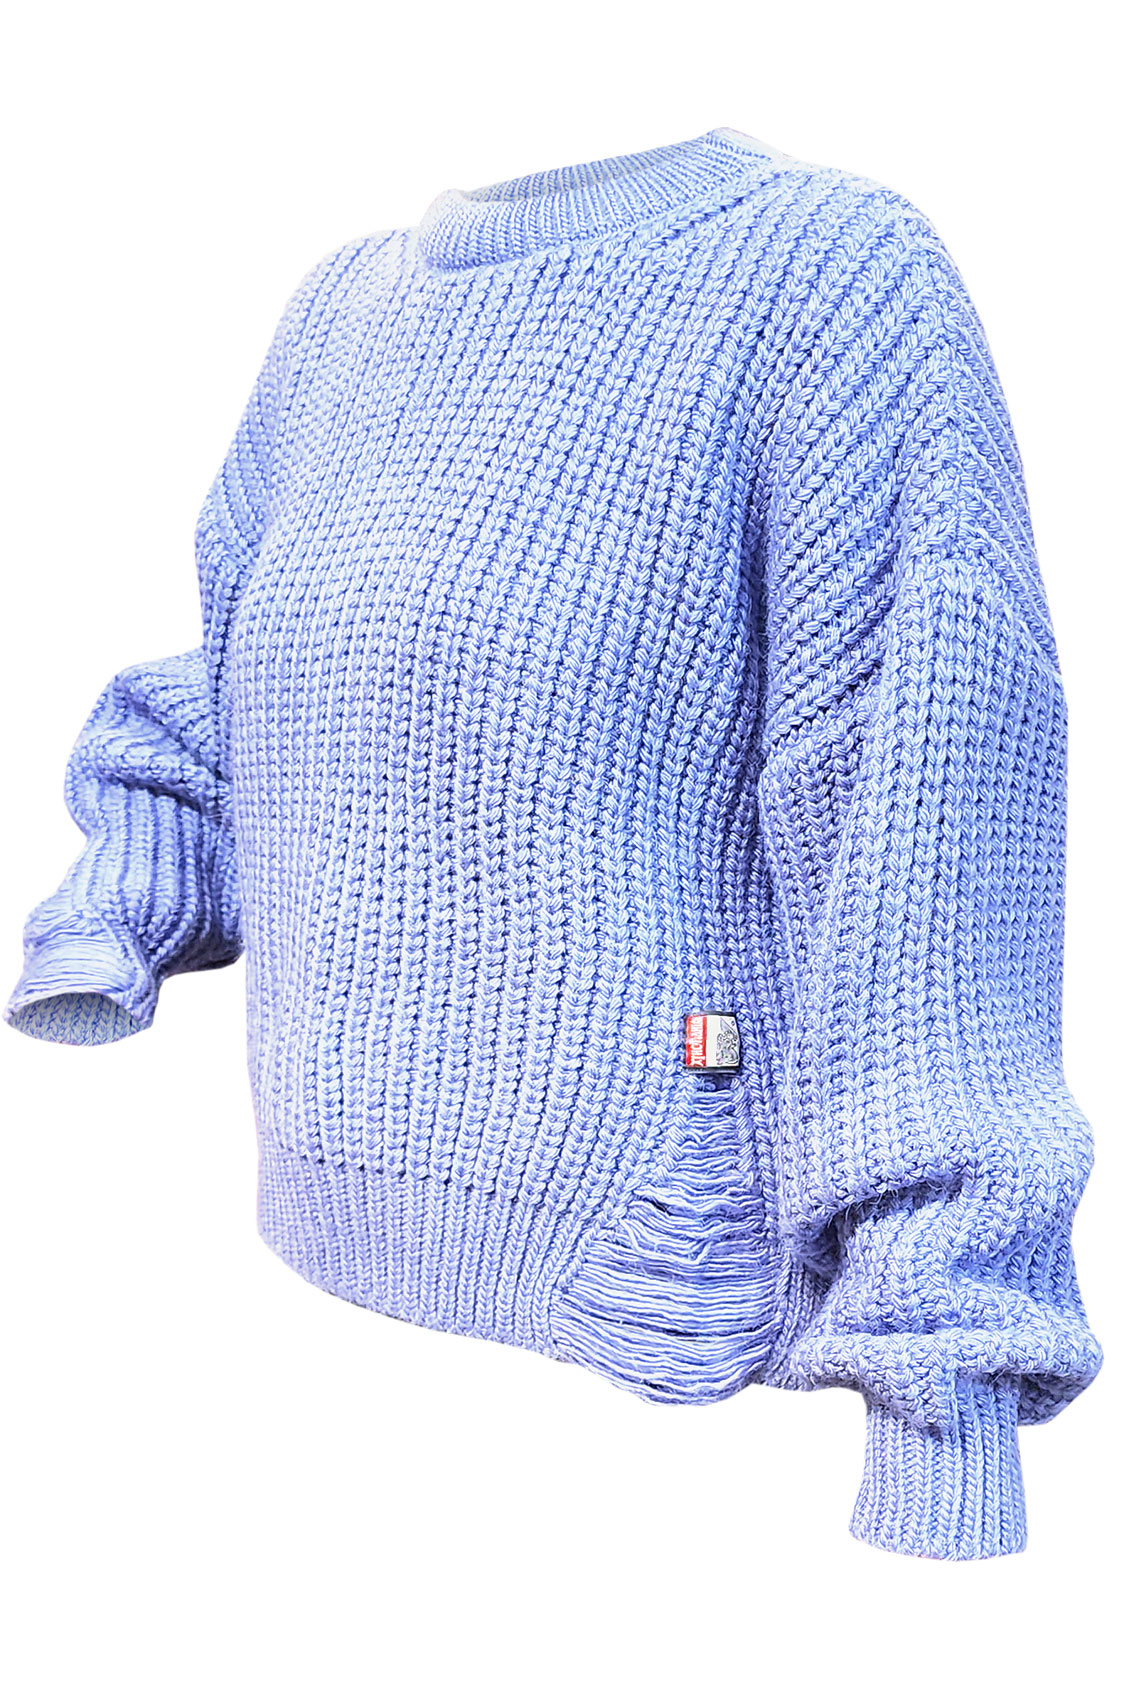 фиолетовый свитер